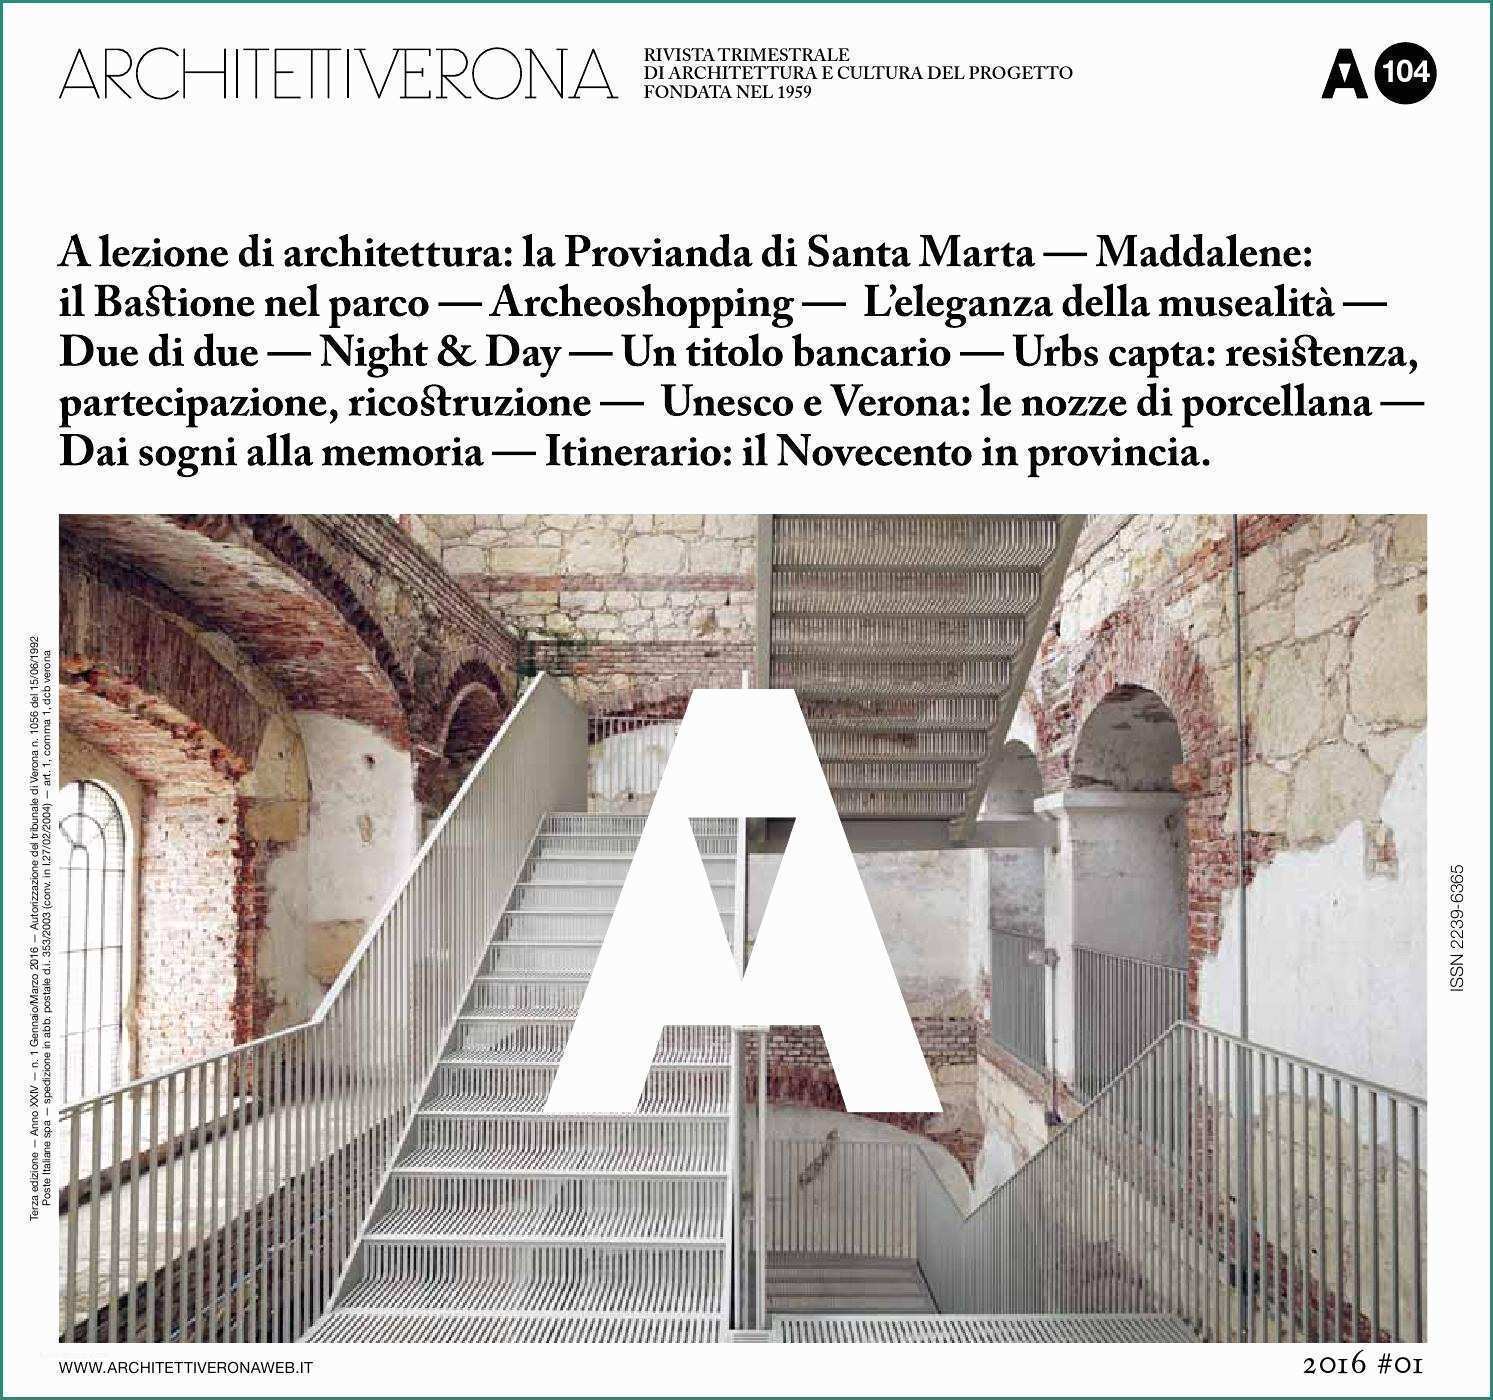 Sedia A Rotelle Per Scendere E Salire Le Scale E Architettiverona 104 by Architettiverona issuu